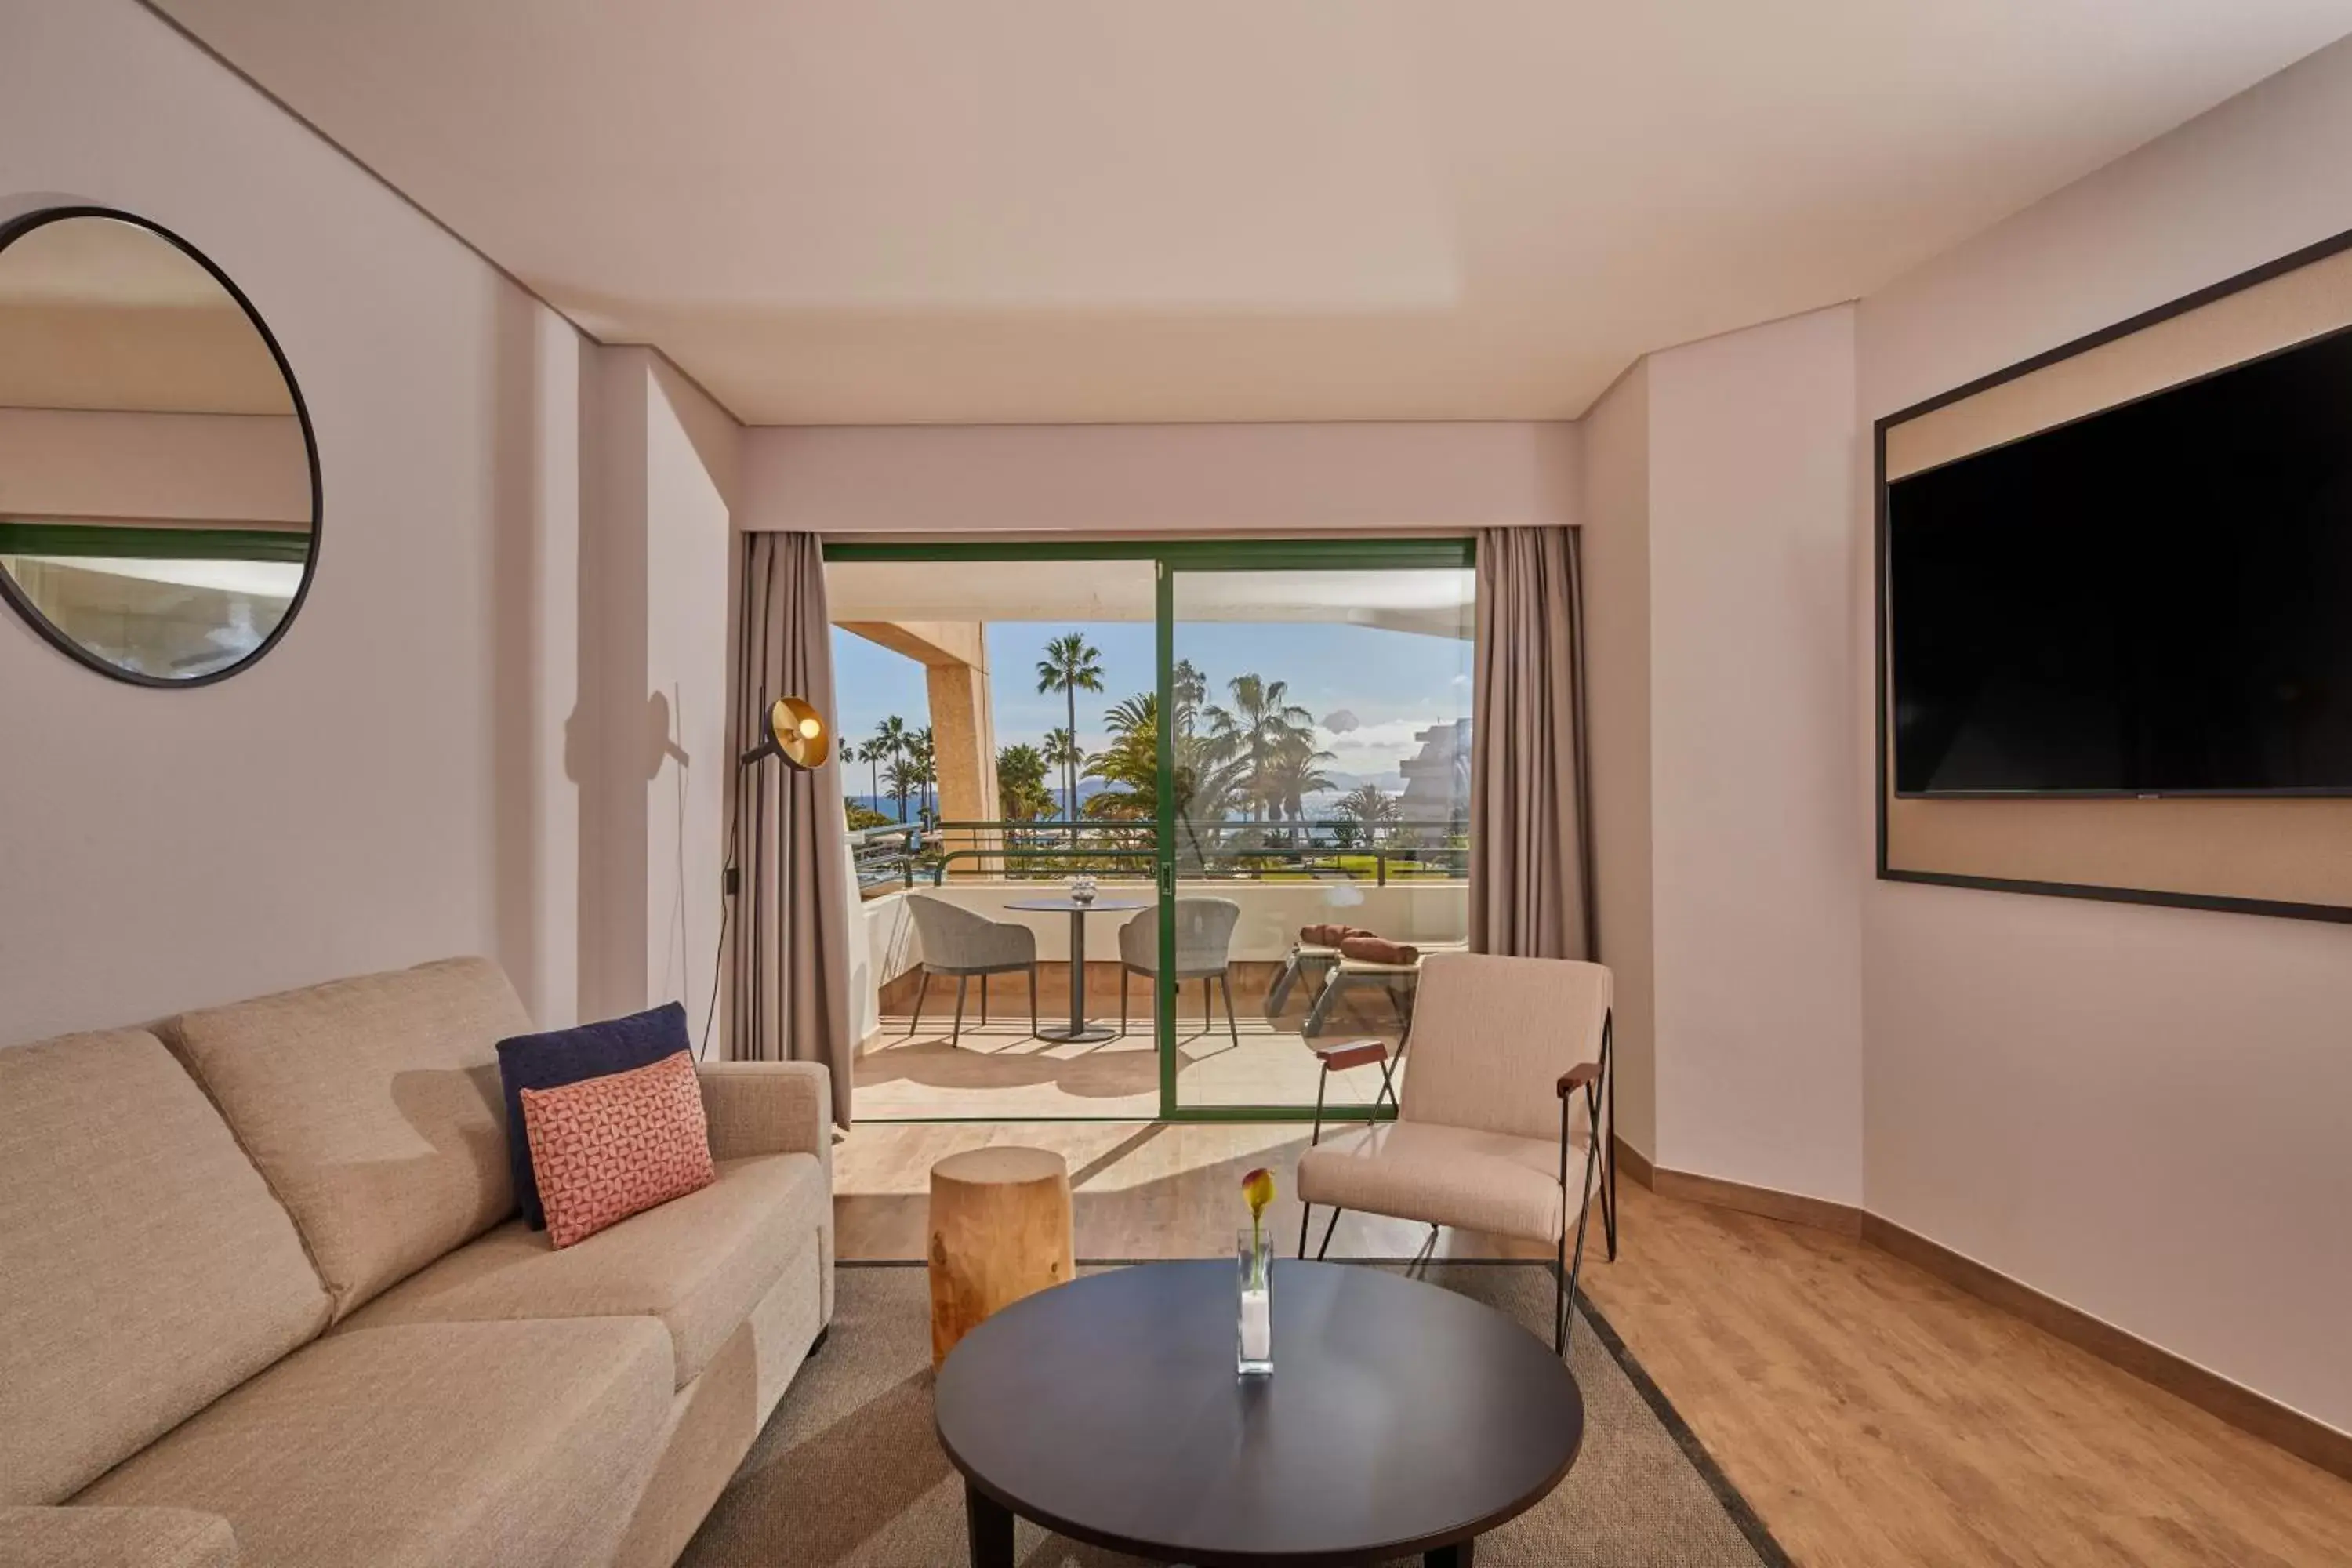 TV and multimedia, Seating Area in Dreams Lanzarote Playa Dorada Resort & Spa